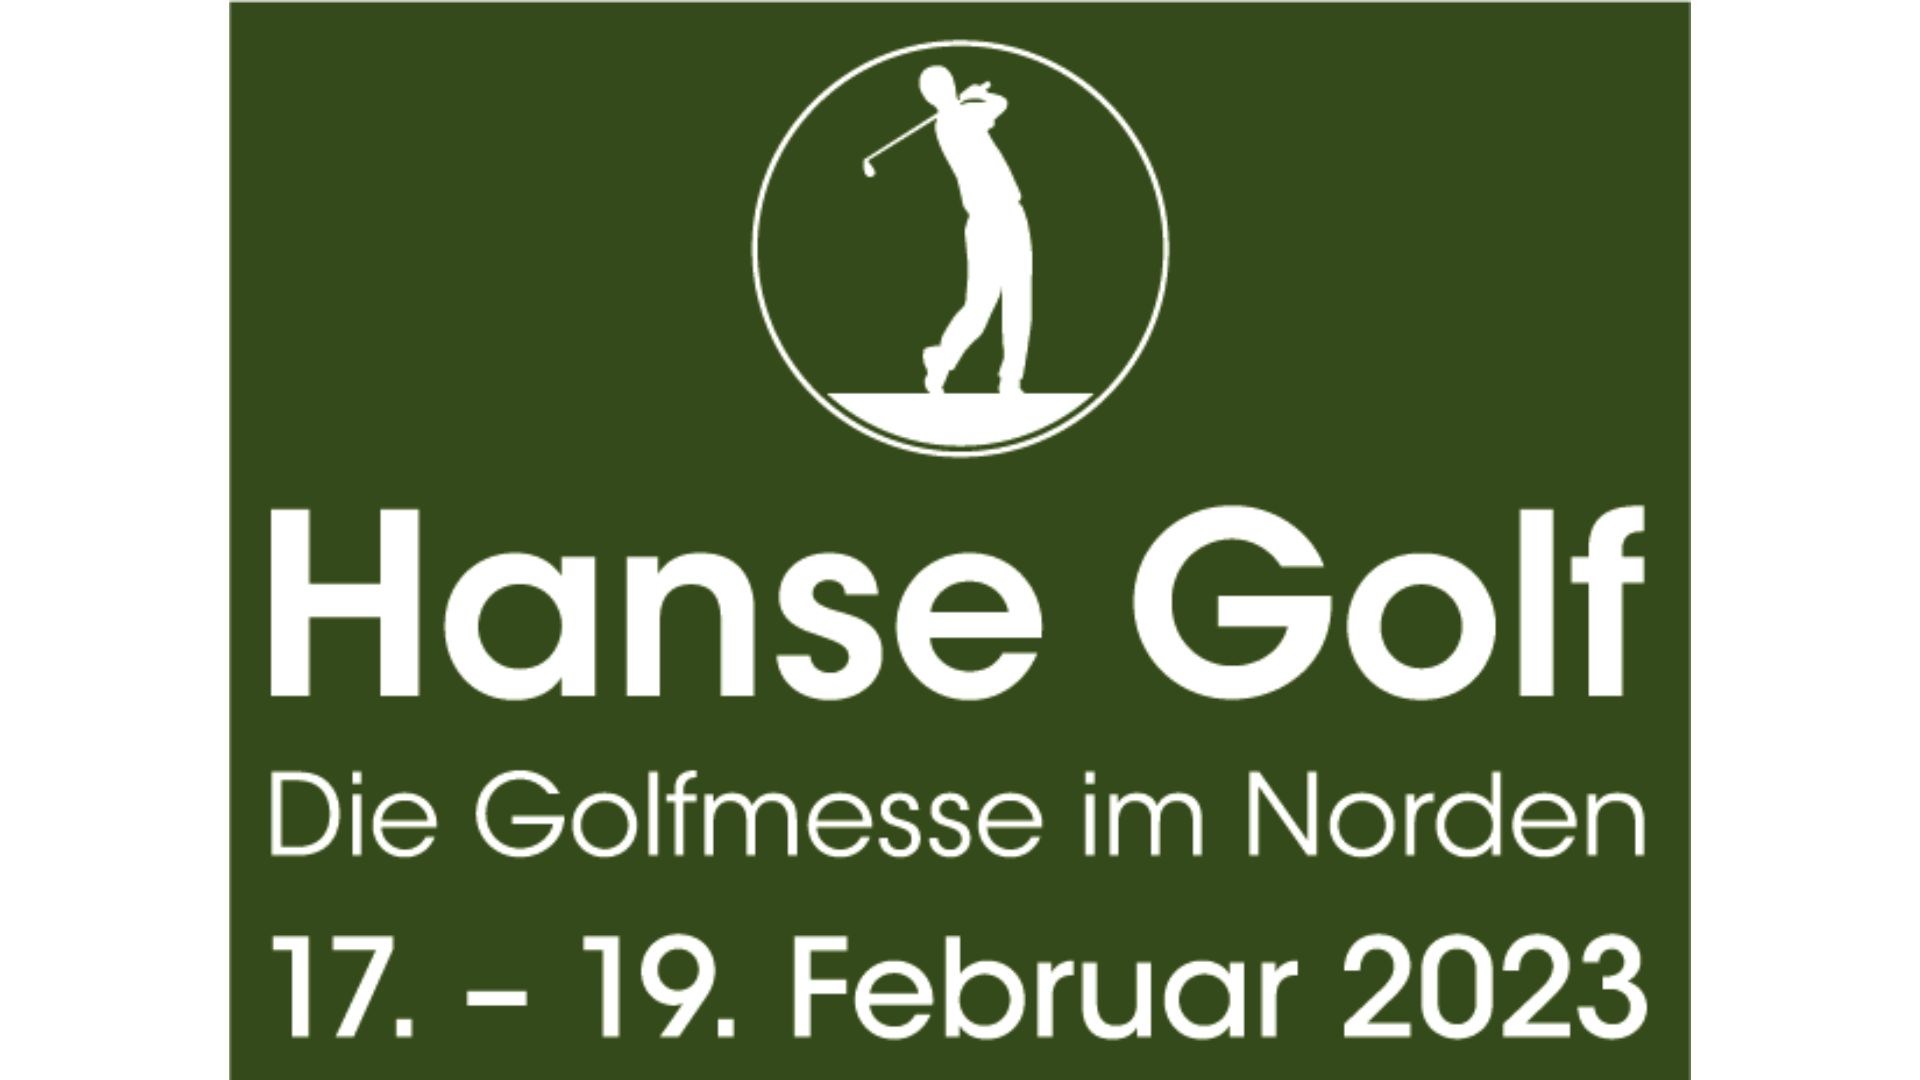 Hanse Golf Die Golfmesse im Norden